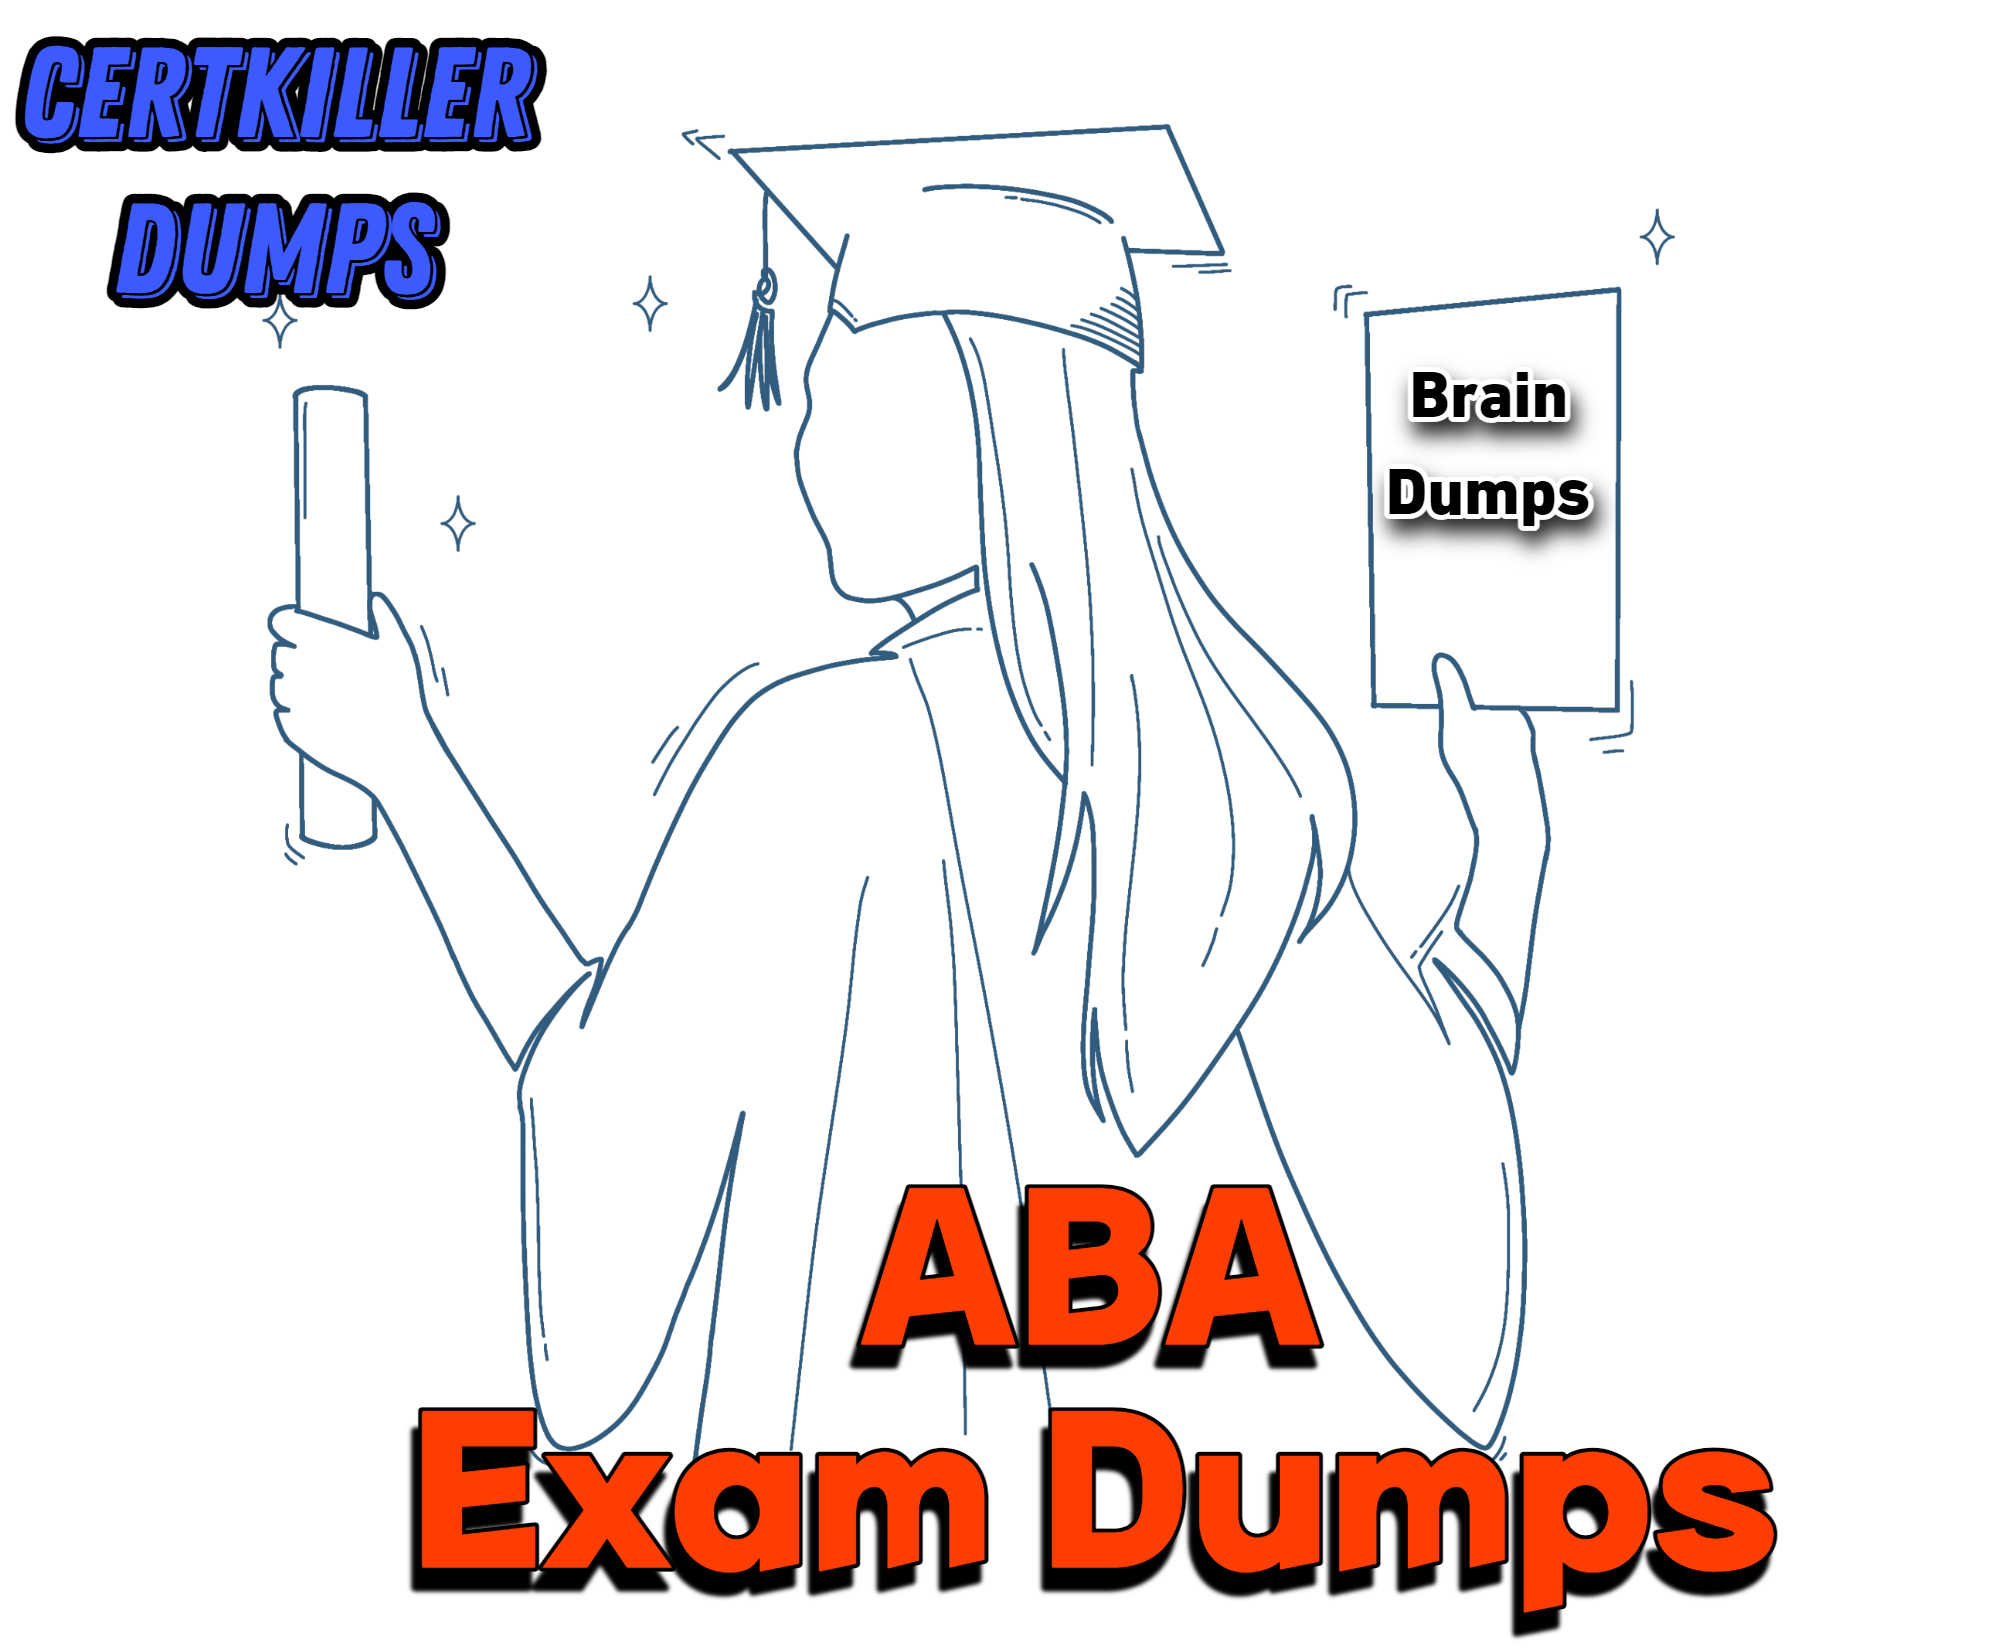 ABA Exam Dumps